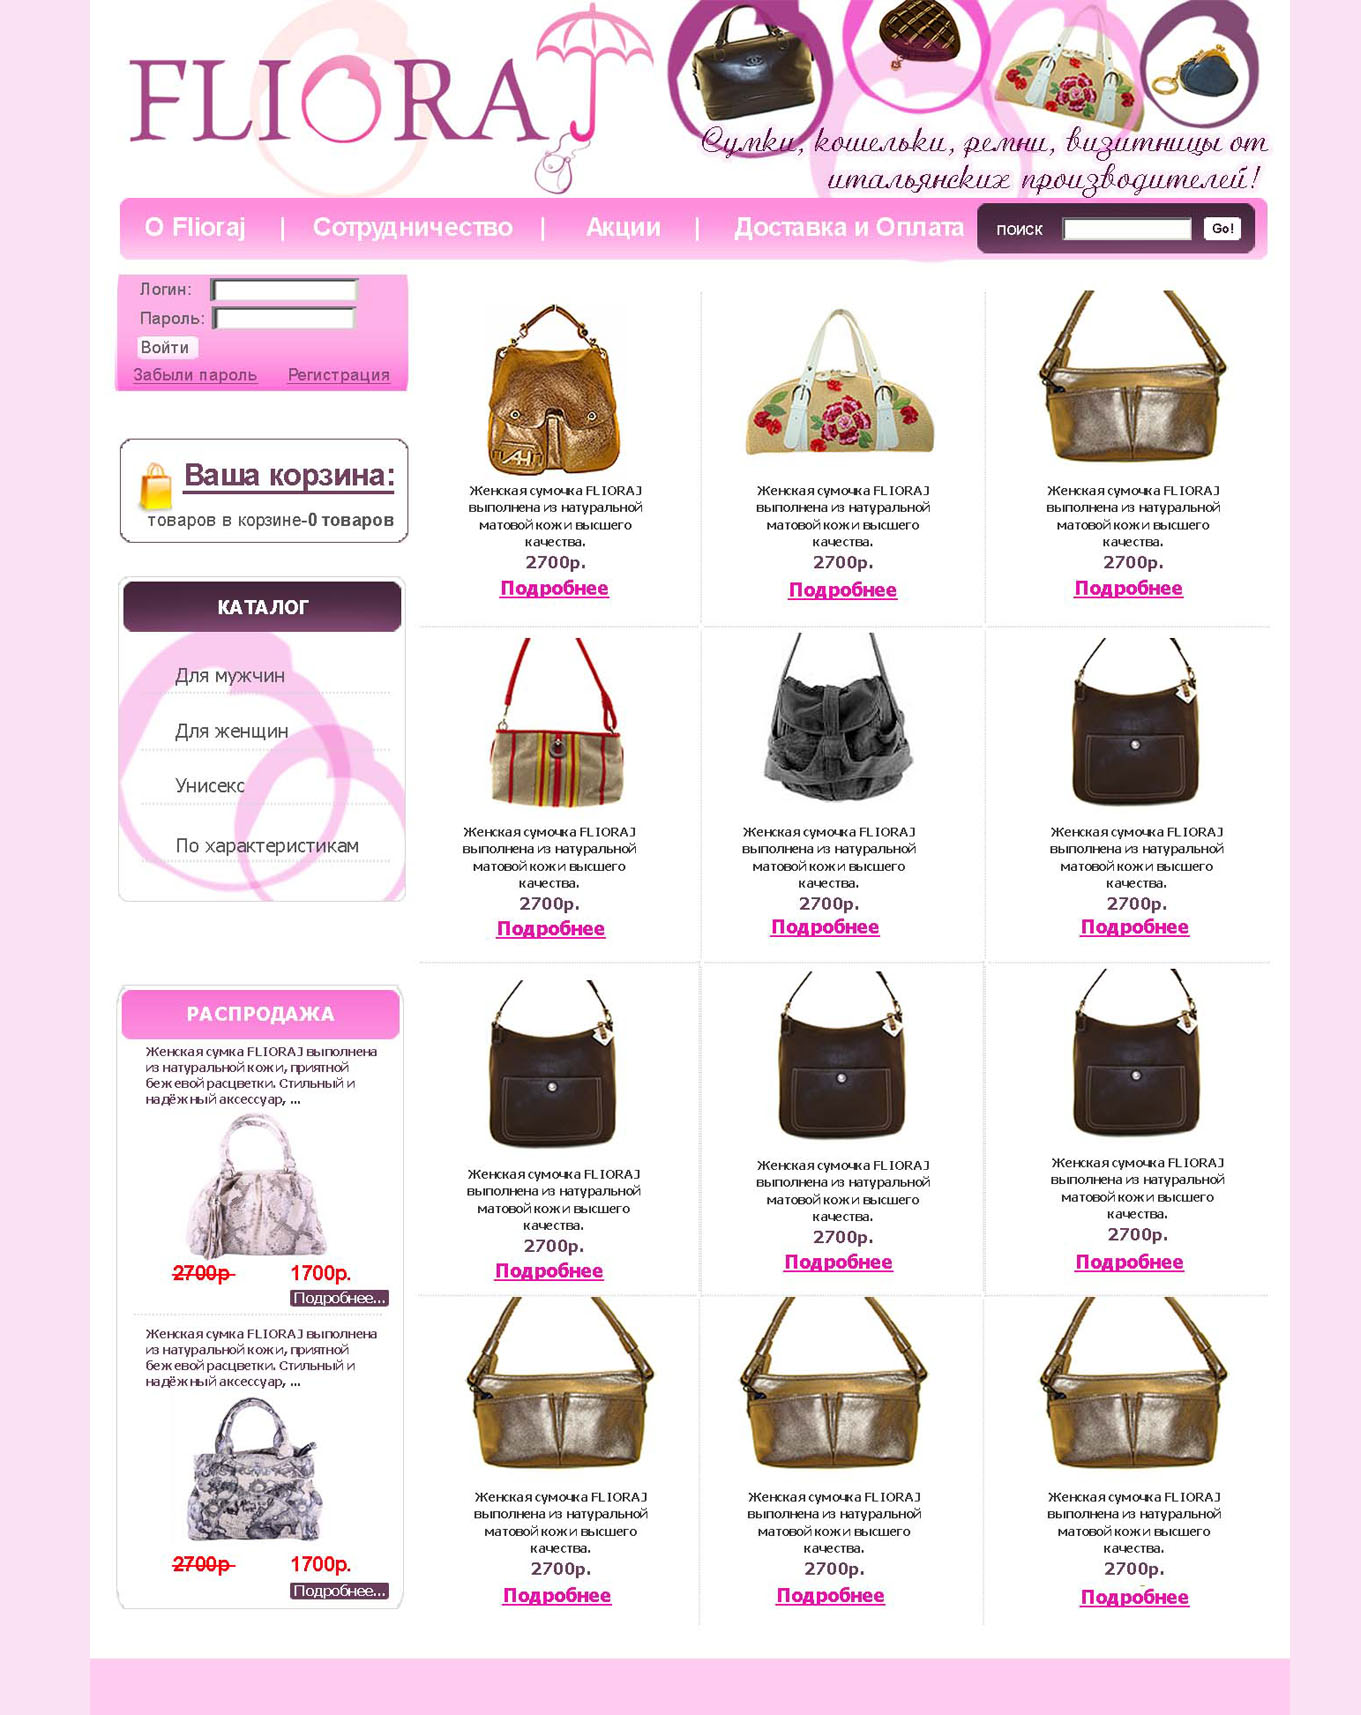 Название моделей сумок. Название женских сумочек. Формы сумок женских. Модели сумок названия. Название форм сумок женских.